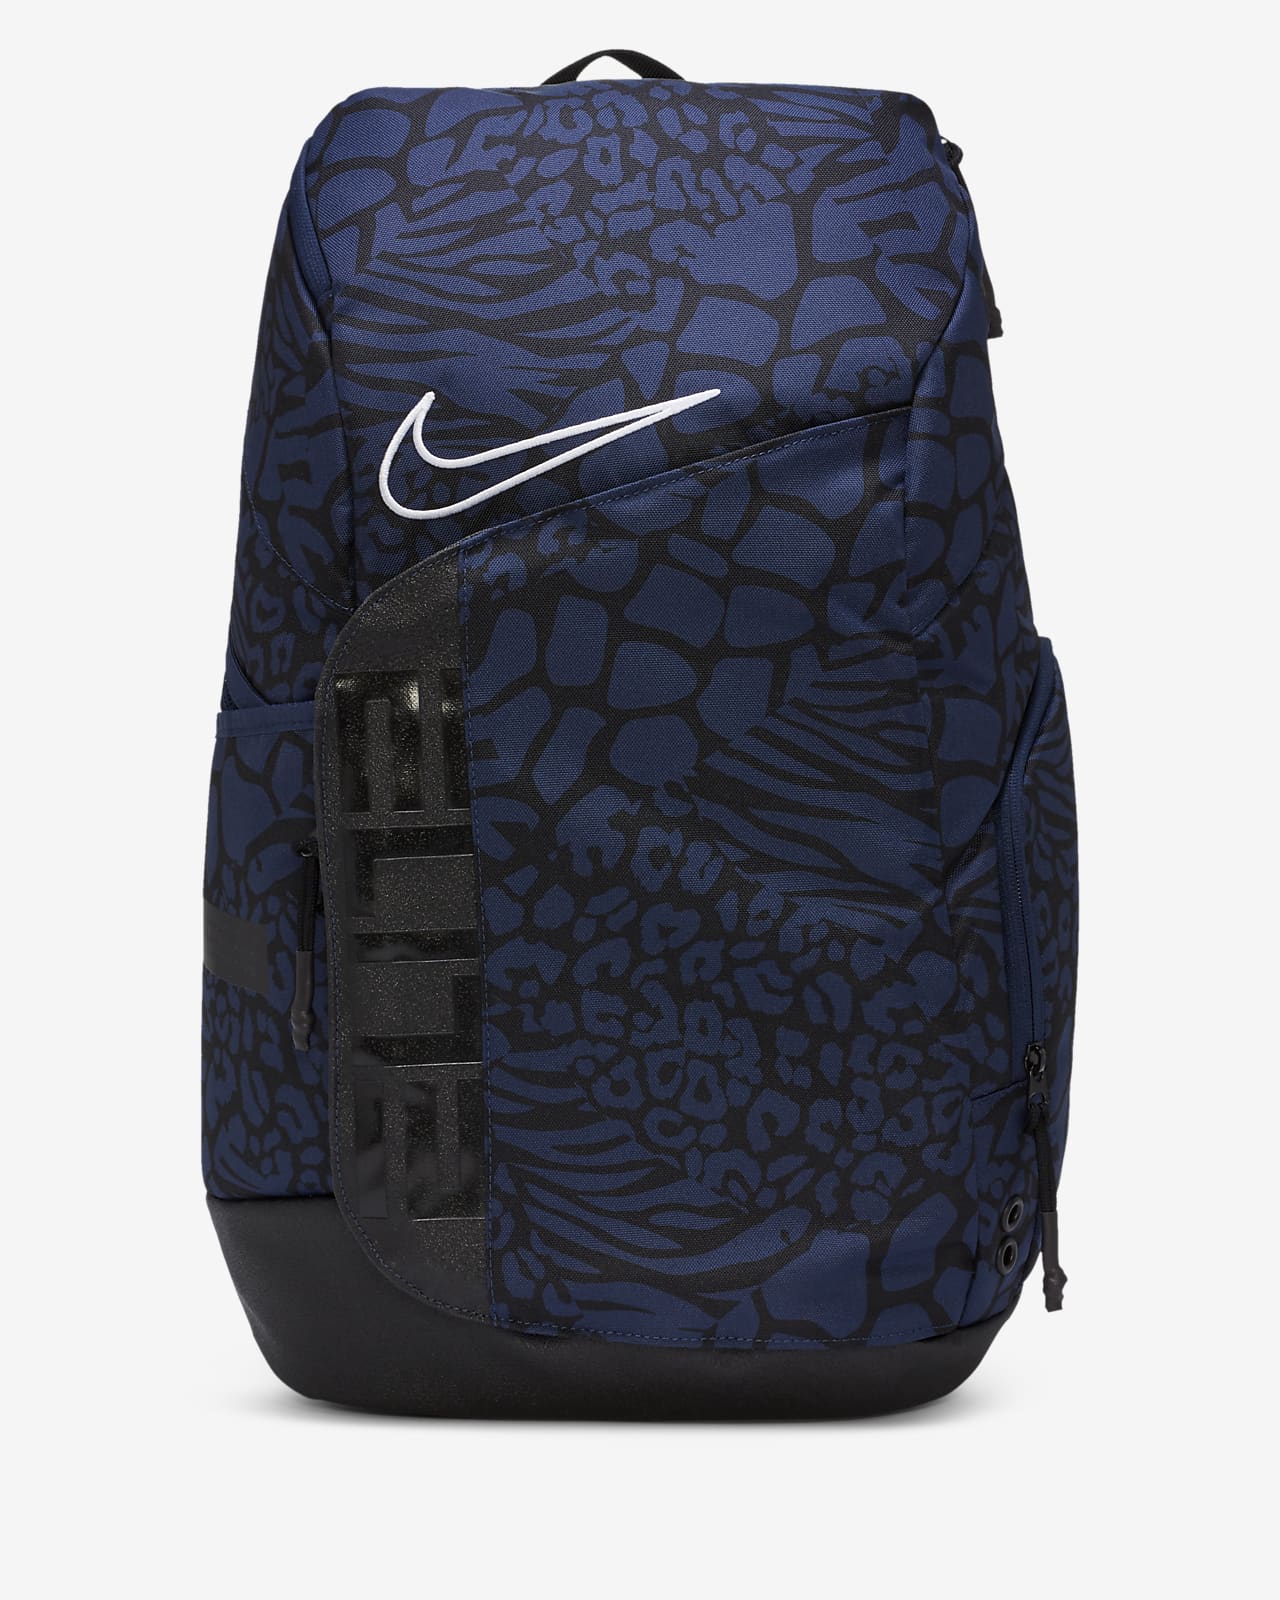 nike hoops elite pro backpack black